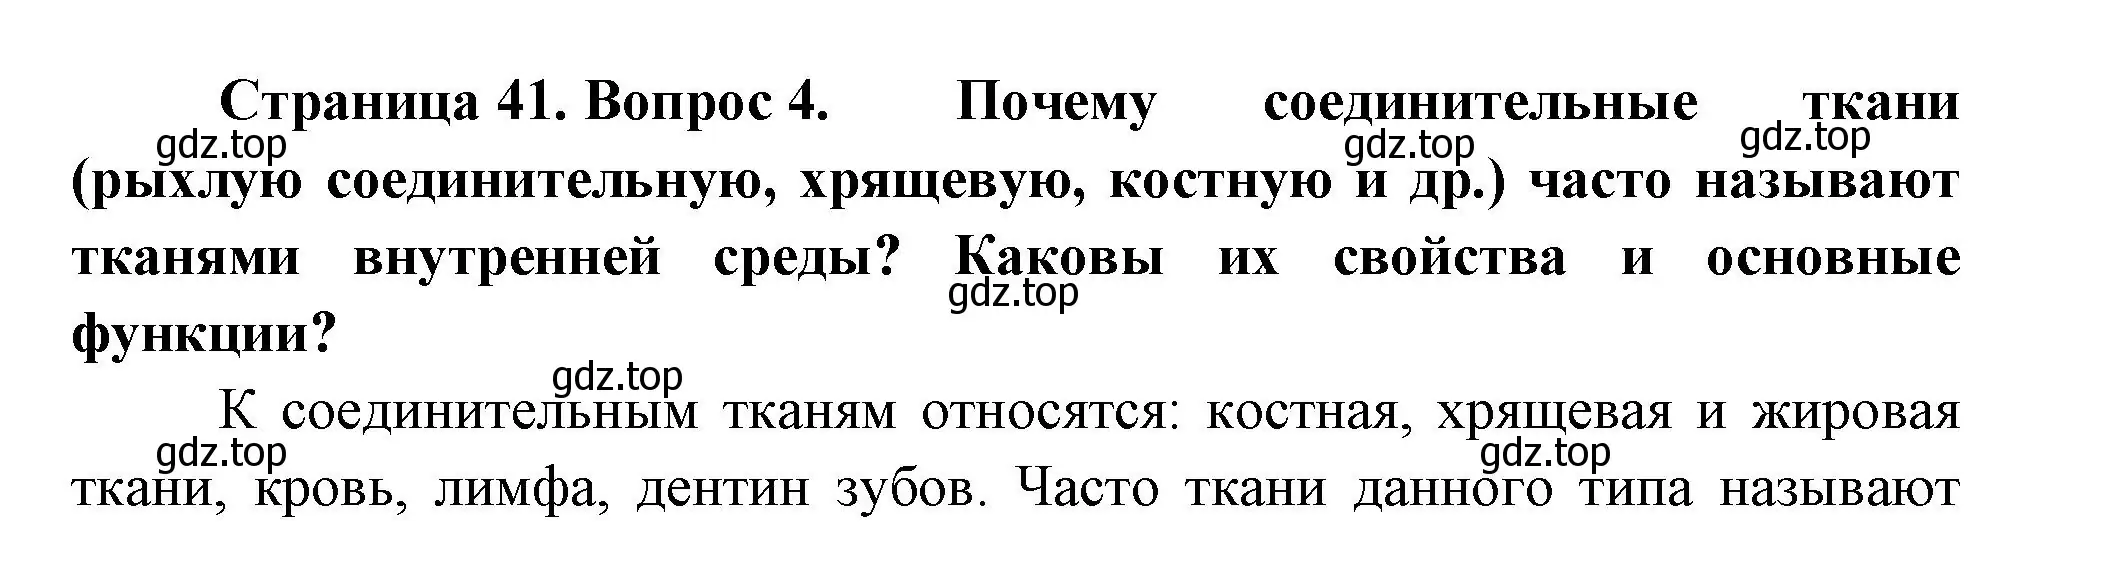 Решение номер 4 (страница 41) гдз по биологии 9 класс Пасечник, Каменский, учебник